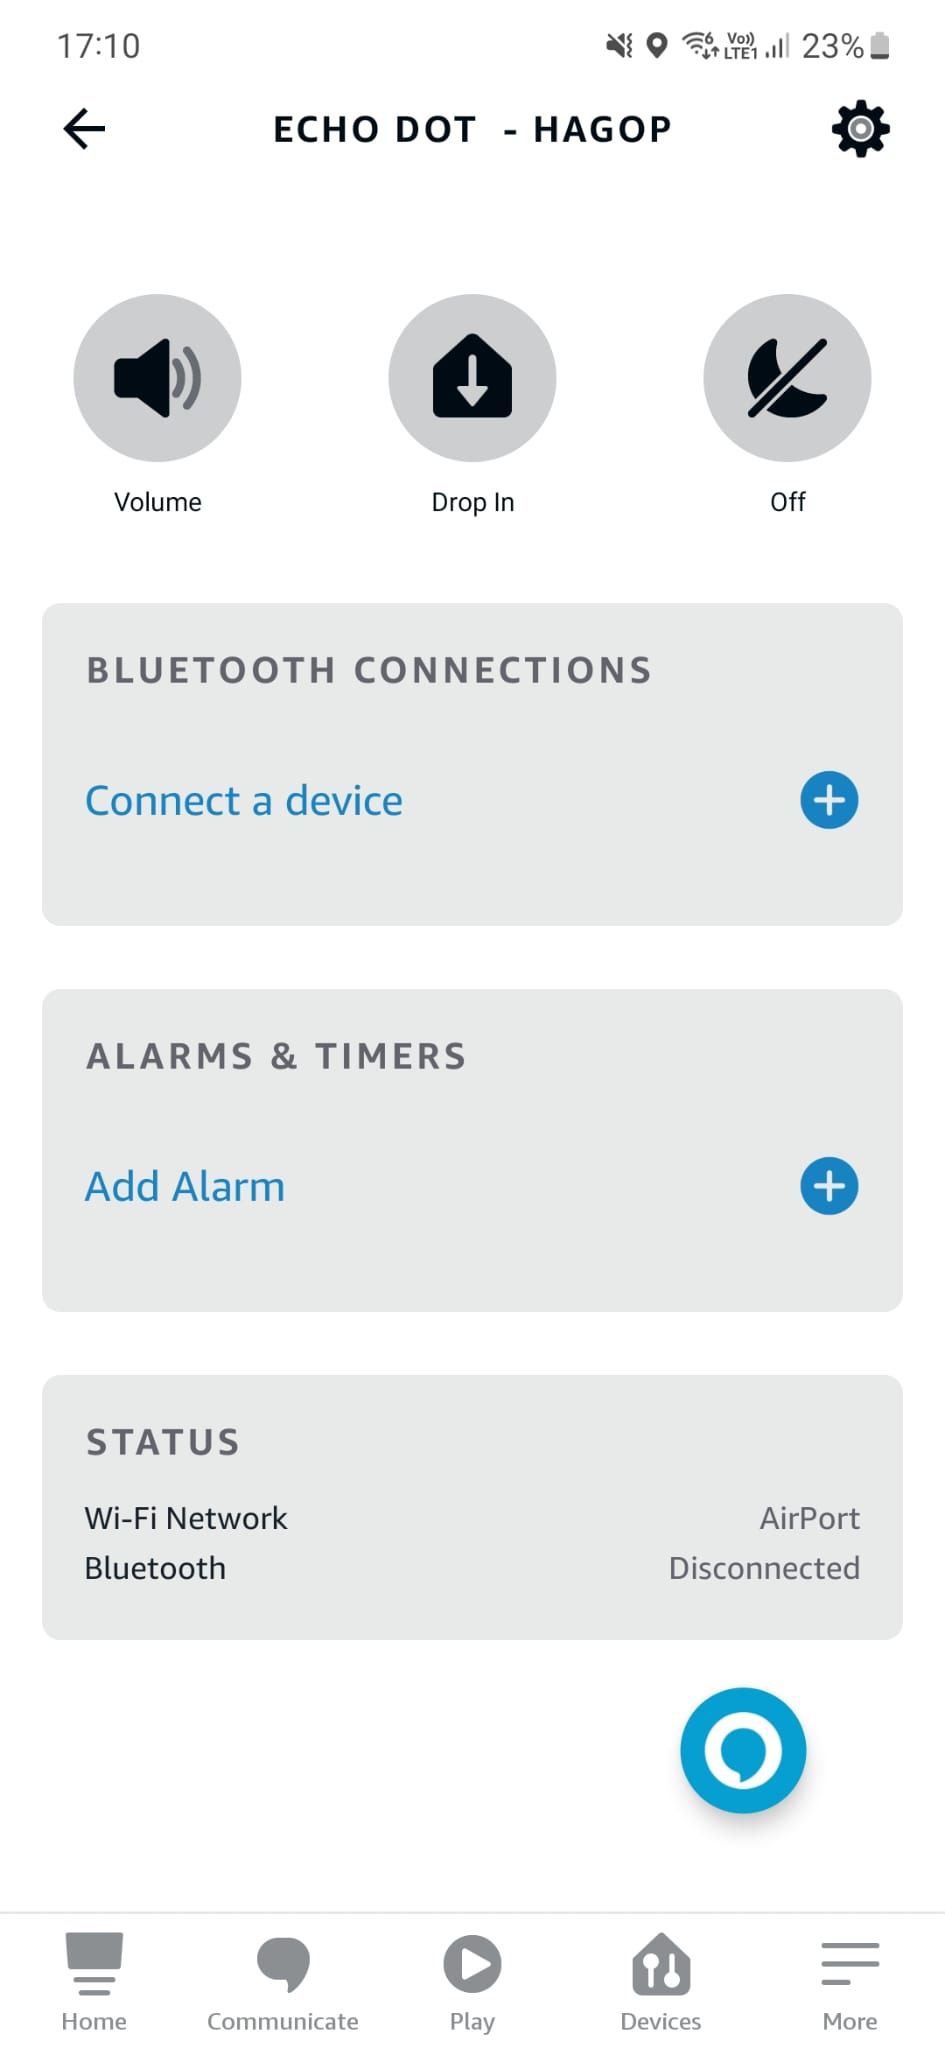 Uma captura de tela do aplicativo Amazon Alexa mostrando as configurações do dispositivo Echo